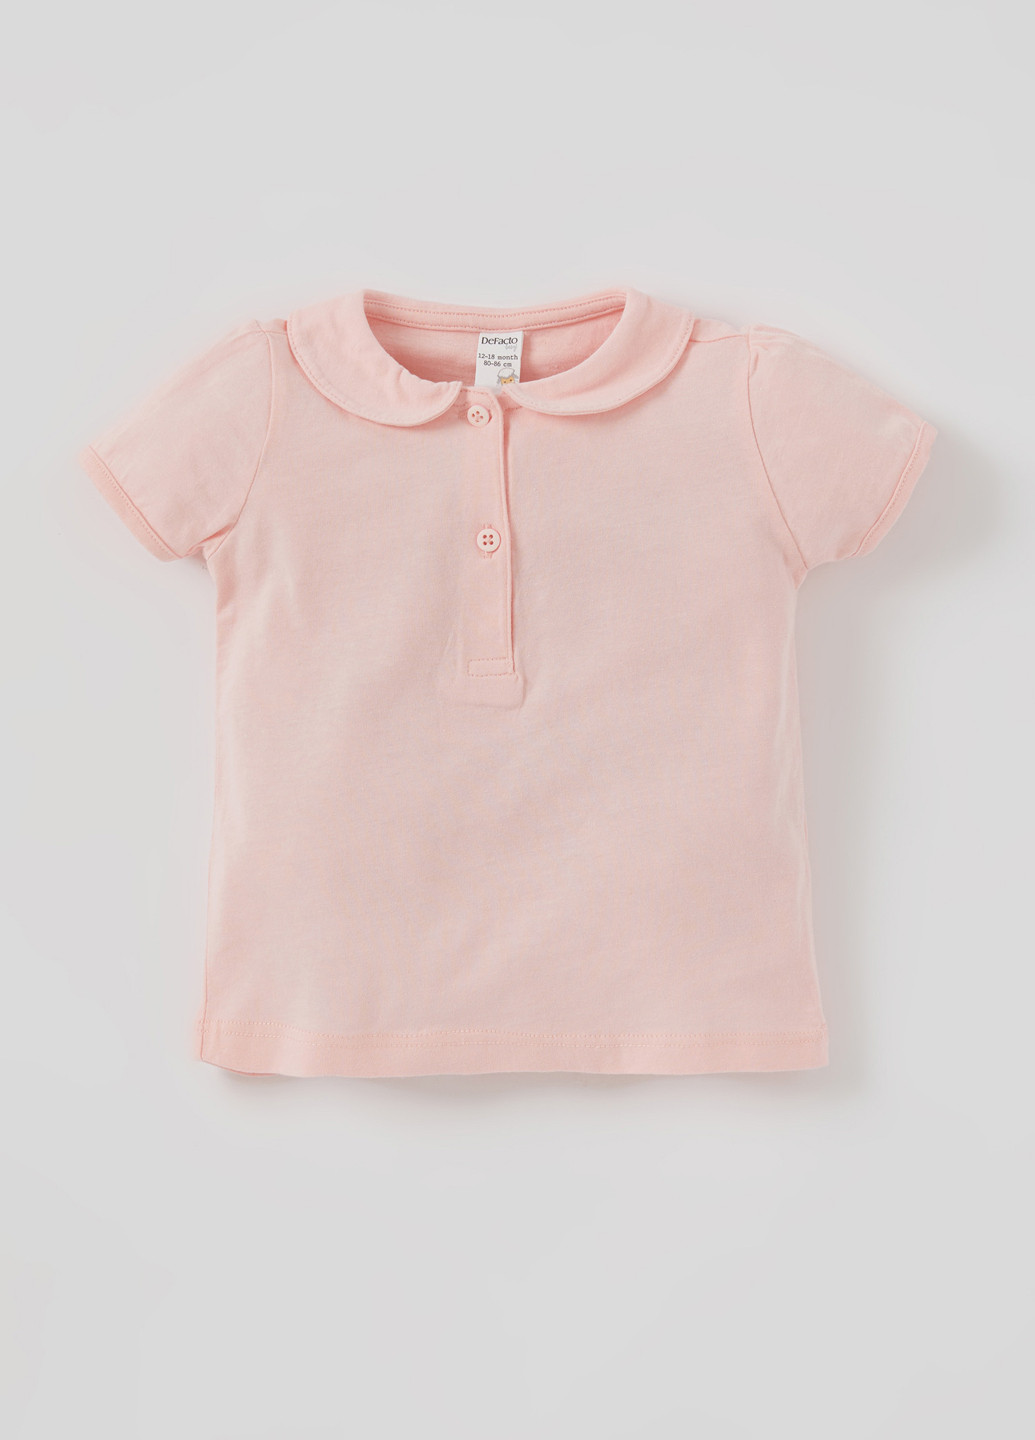 Светло-розовая детская футболка-футболка для девочки DeFacto